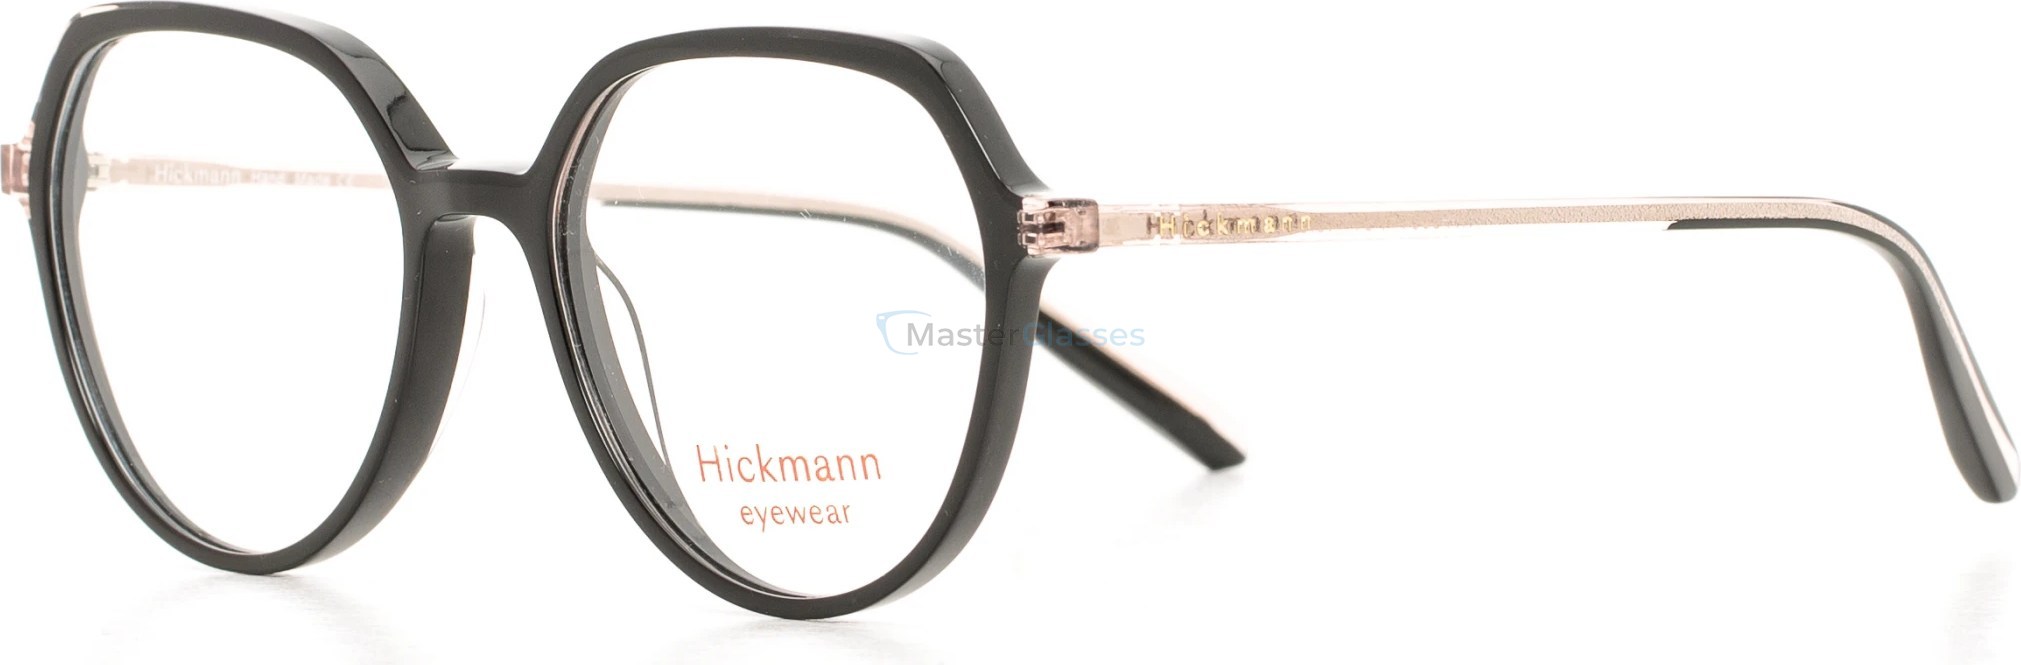  Hickmann HIY6001 P01